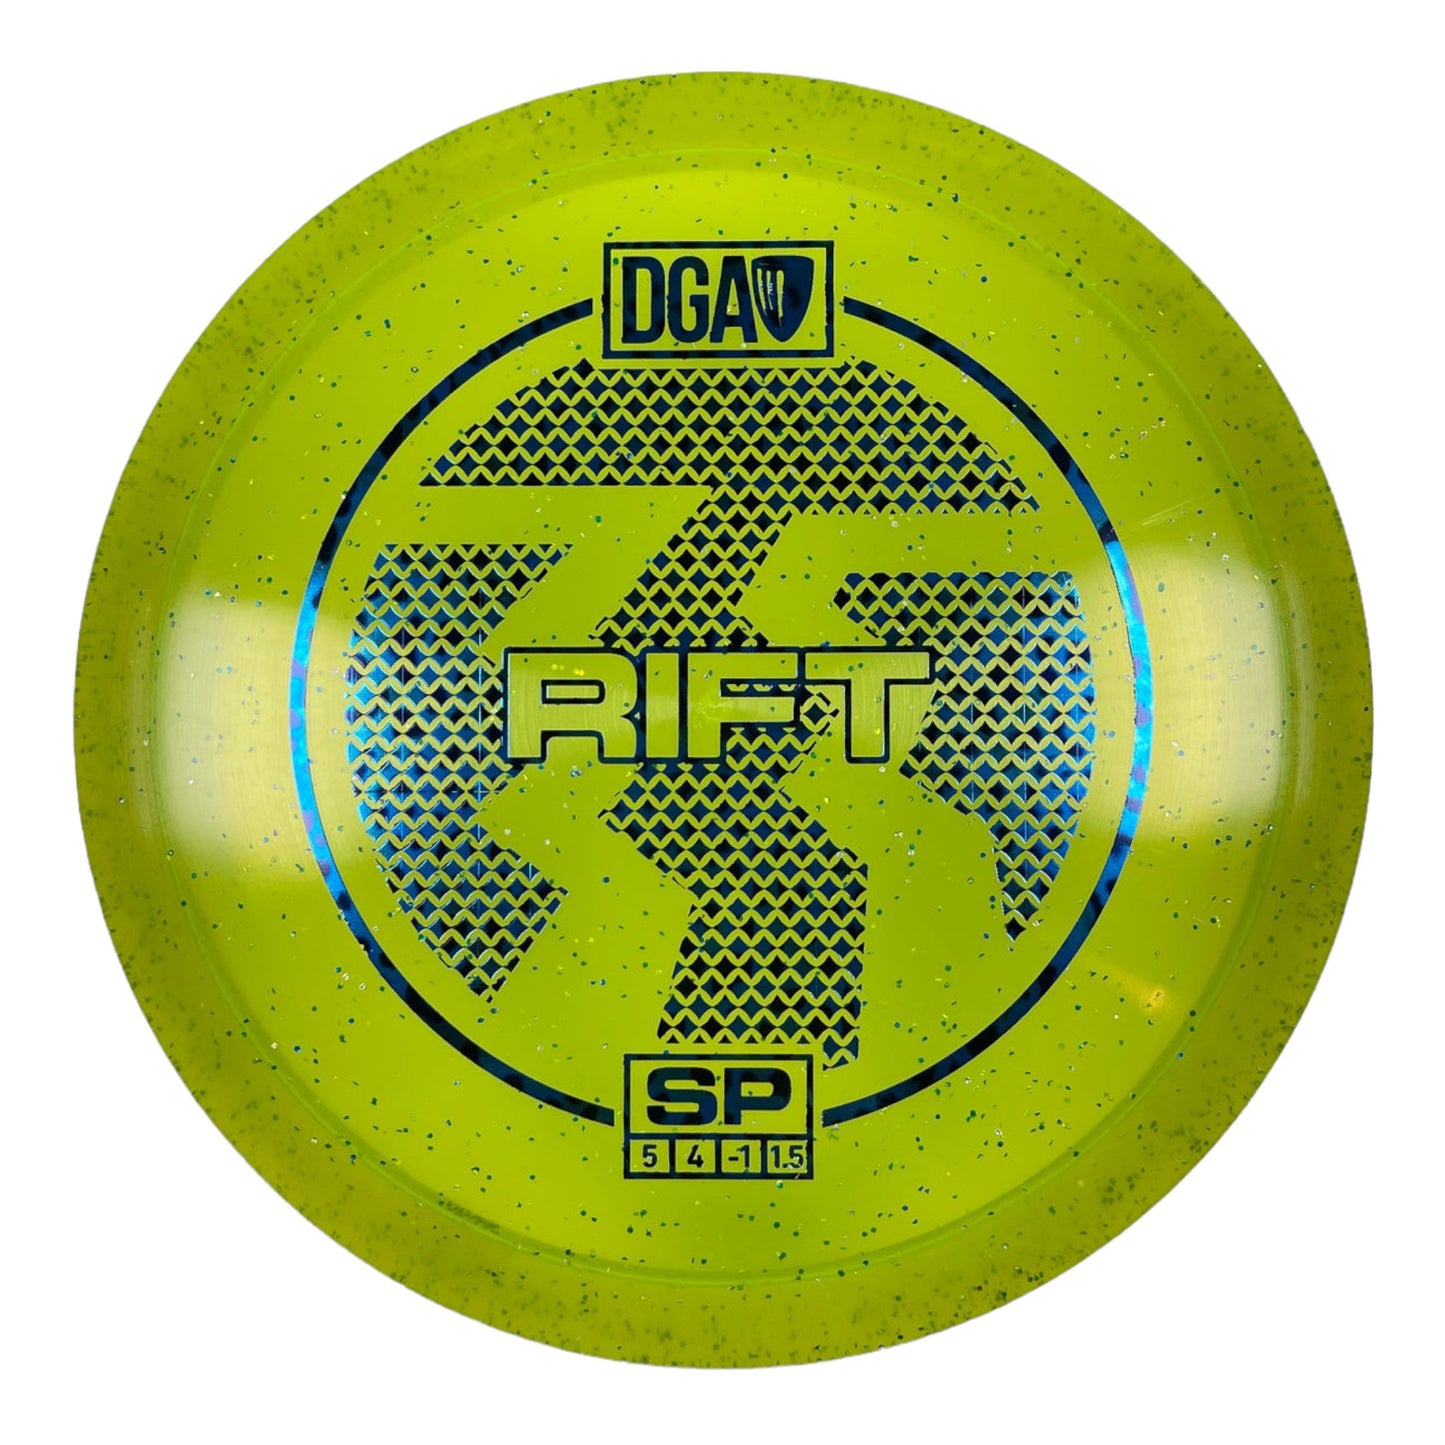 DGA Rift | SP | Yellow/Blue 176-177g Disc Golf